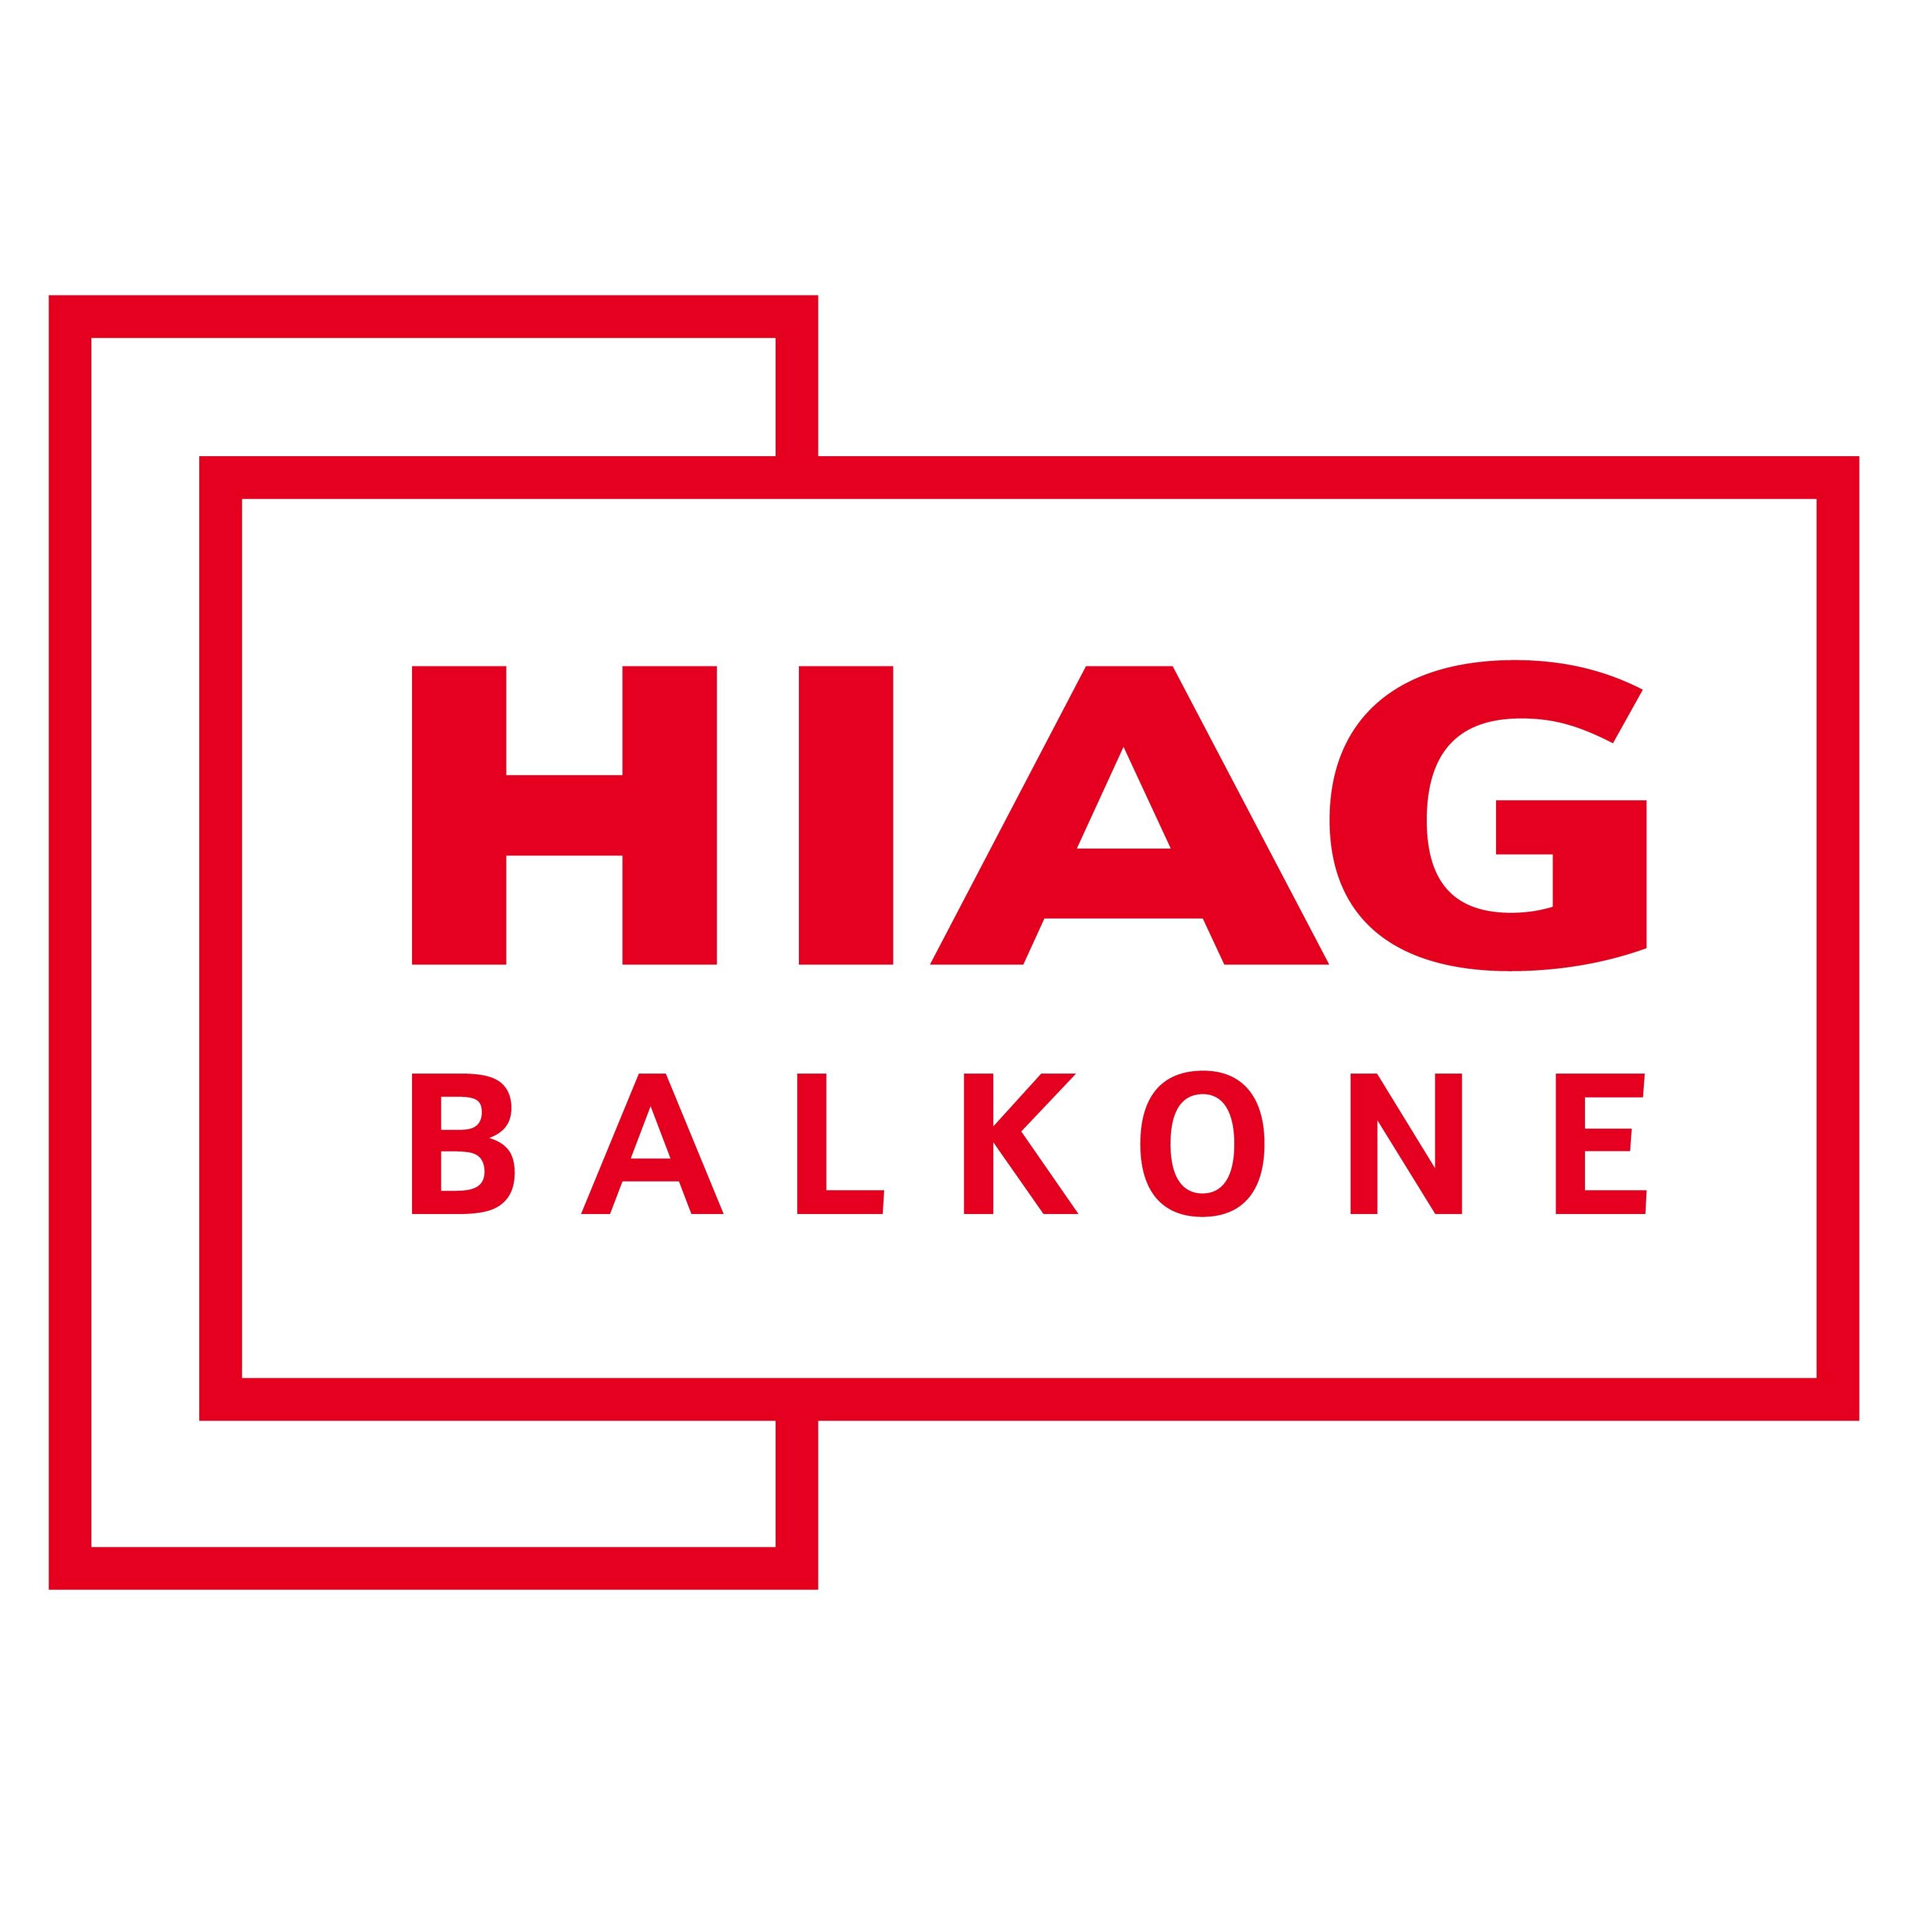 Hiag Balkonbau Logo